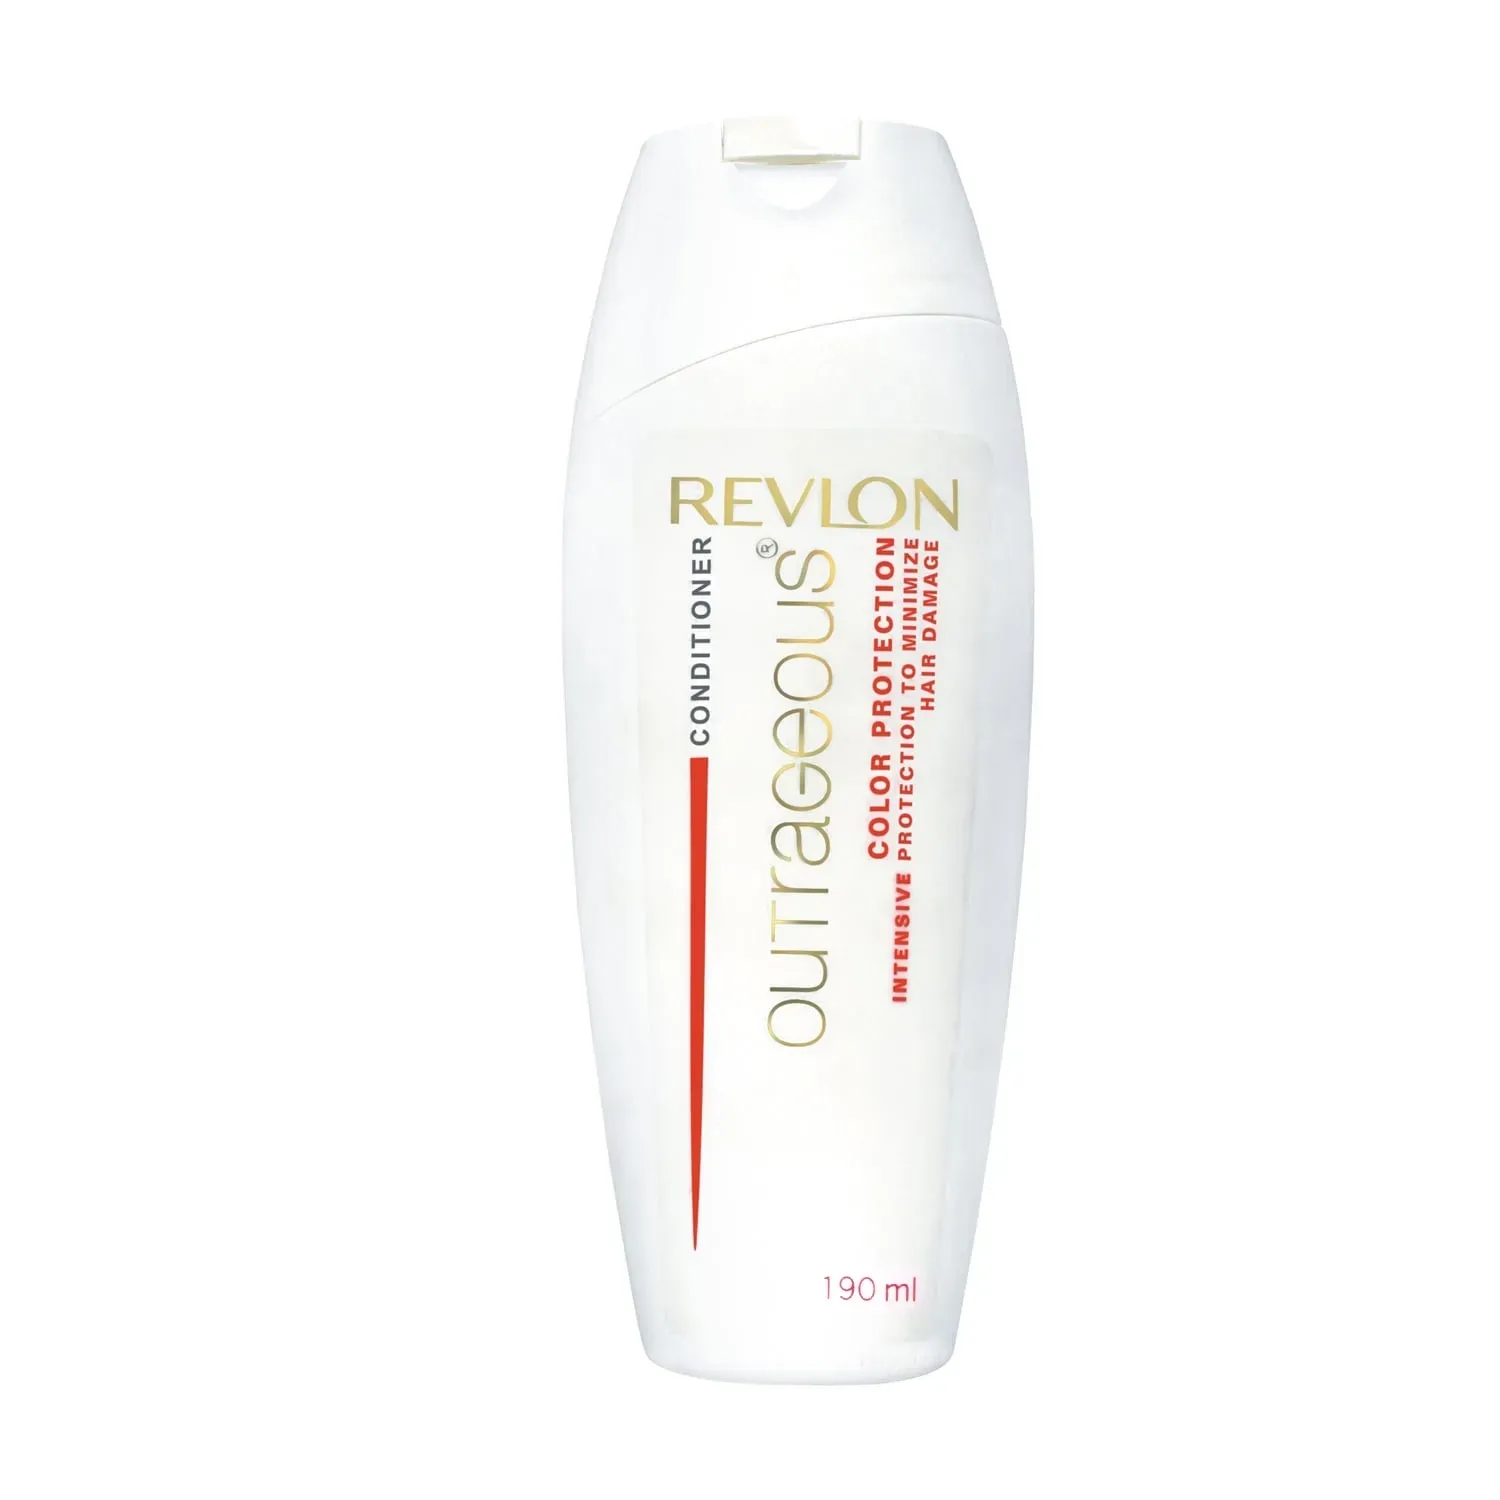 Revlon | Revlon Outrageous Color Protection Conditioner (190ml)